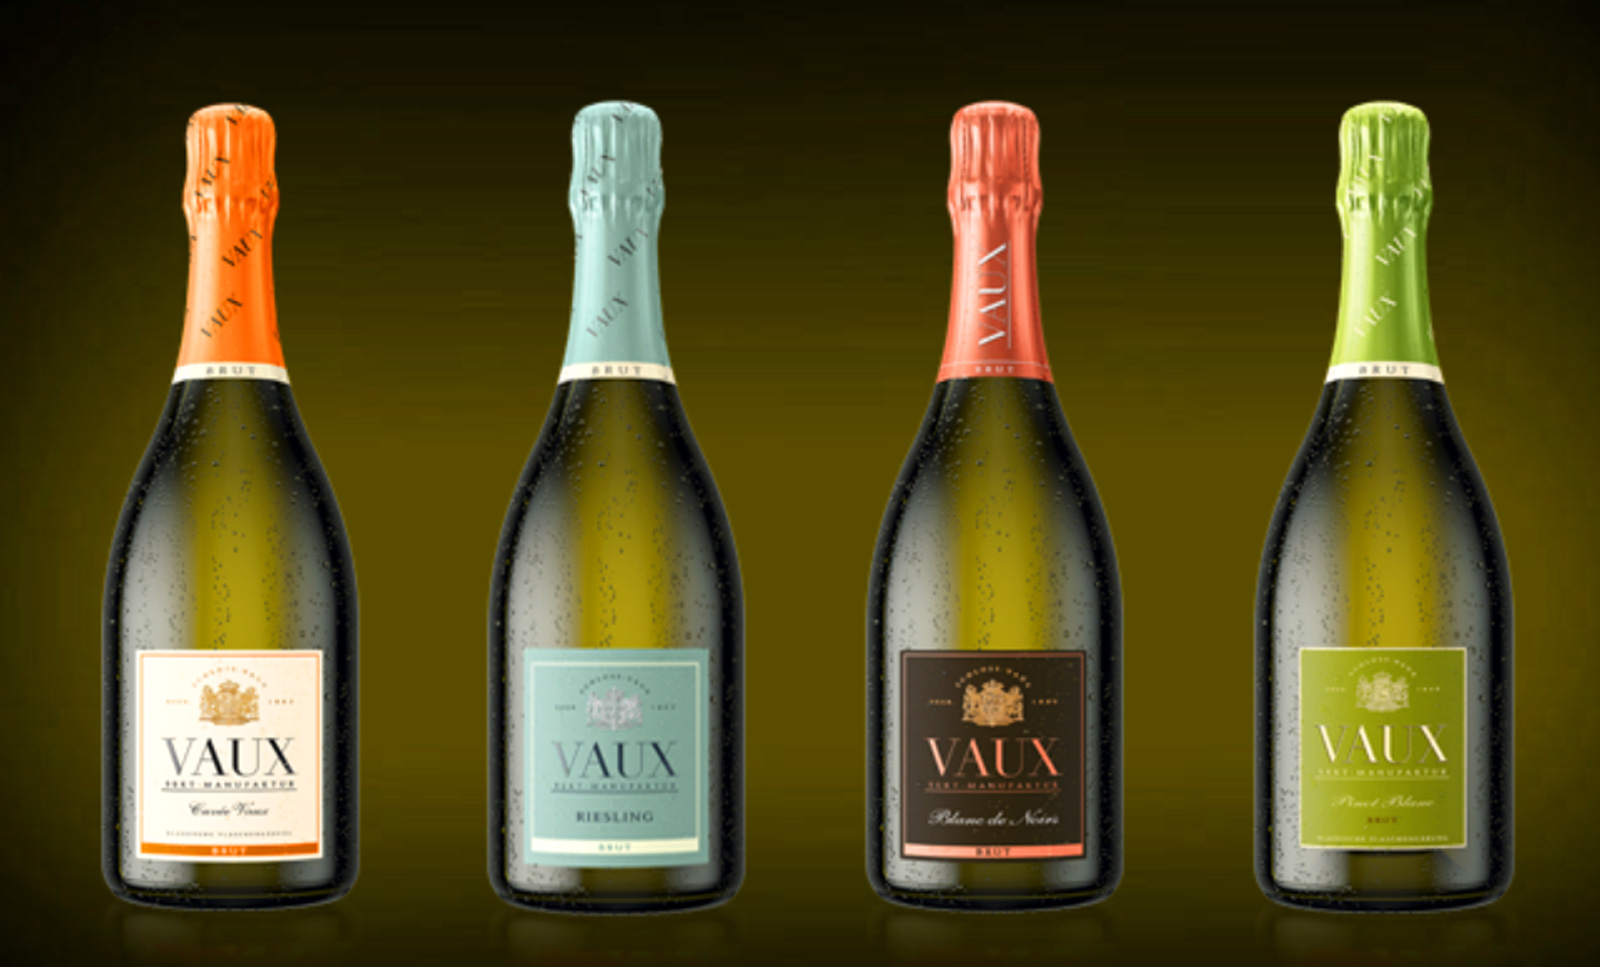 CASTELUL DE CHAMPAGNE VAUX Toate vinurile spumante VAUX sunt produse folosind metoda traditionala de fermentare clasica in sticla si sunt dozate brut.